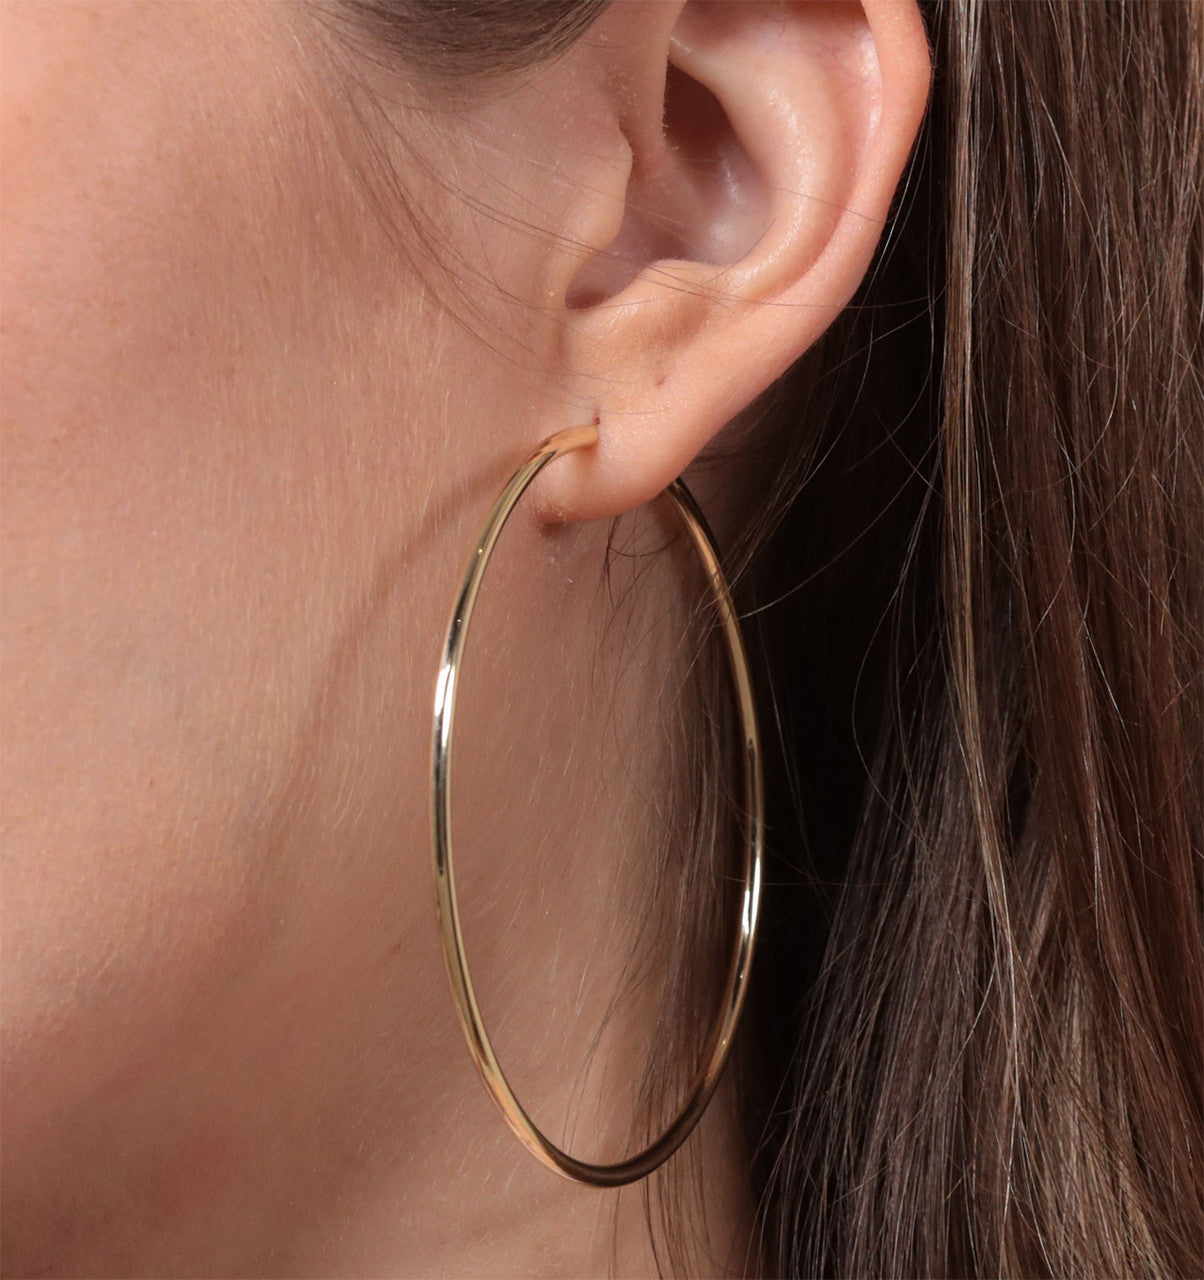 Buy Large Gold Hoop Earrings Extra Large Hoop Earrings 14K Gold Online in  India  Etsy